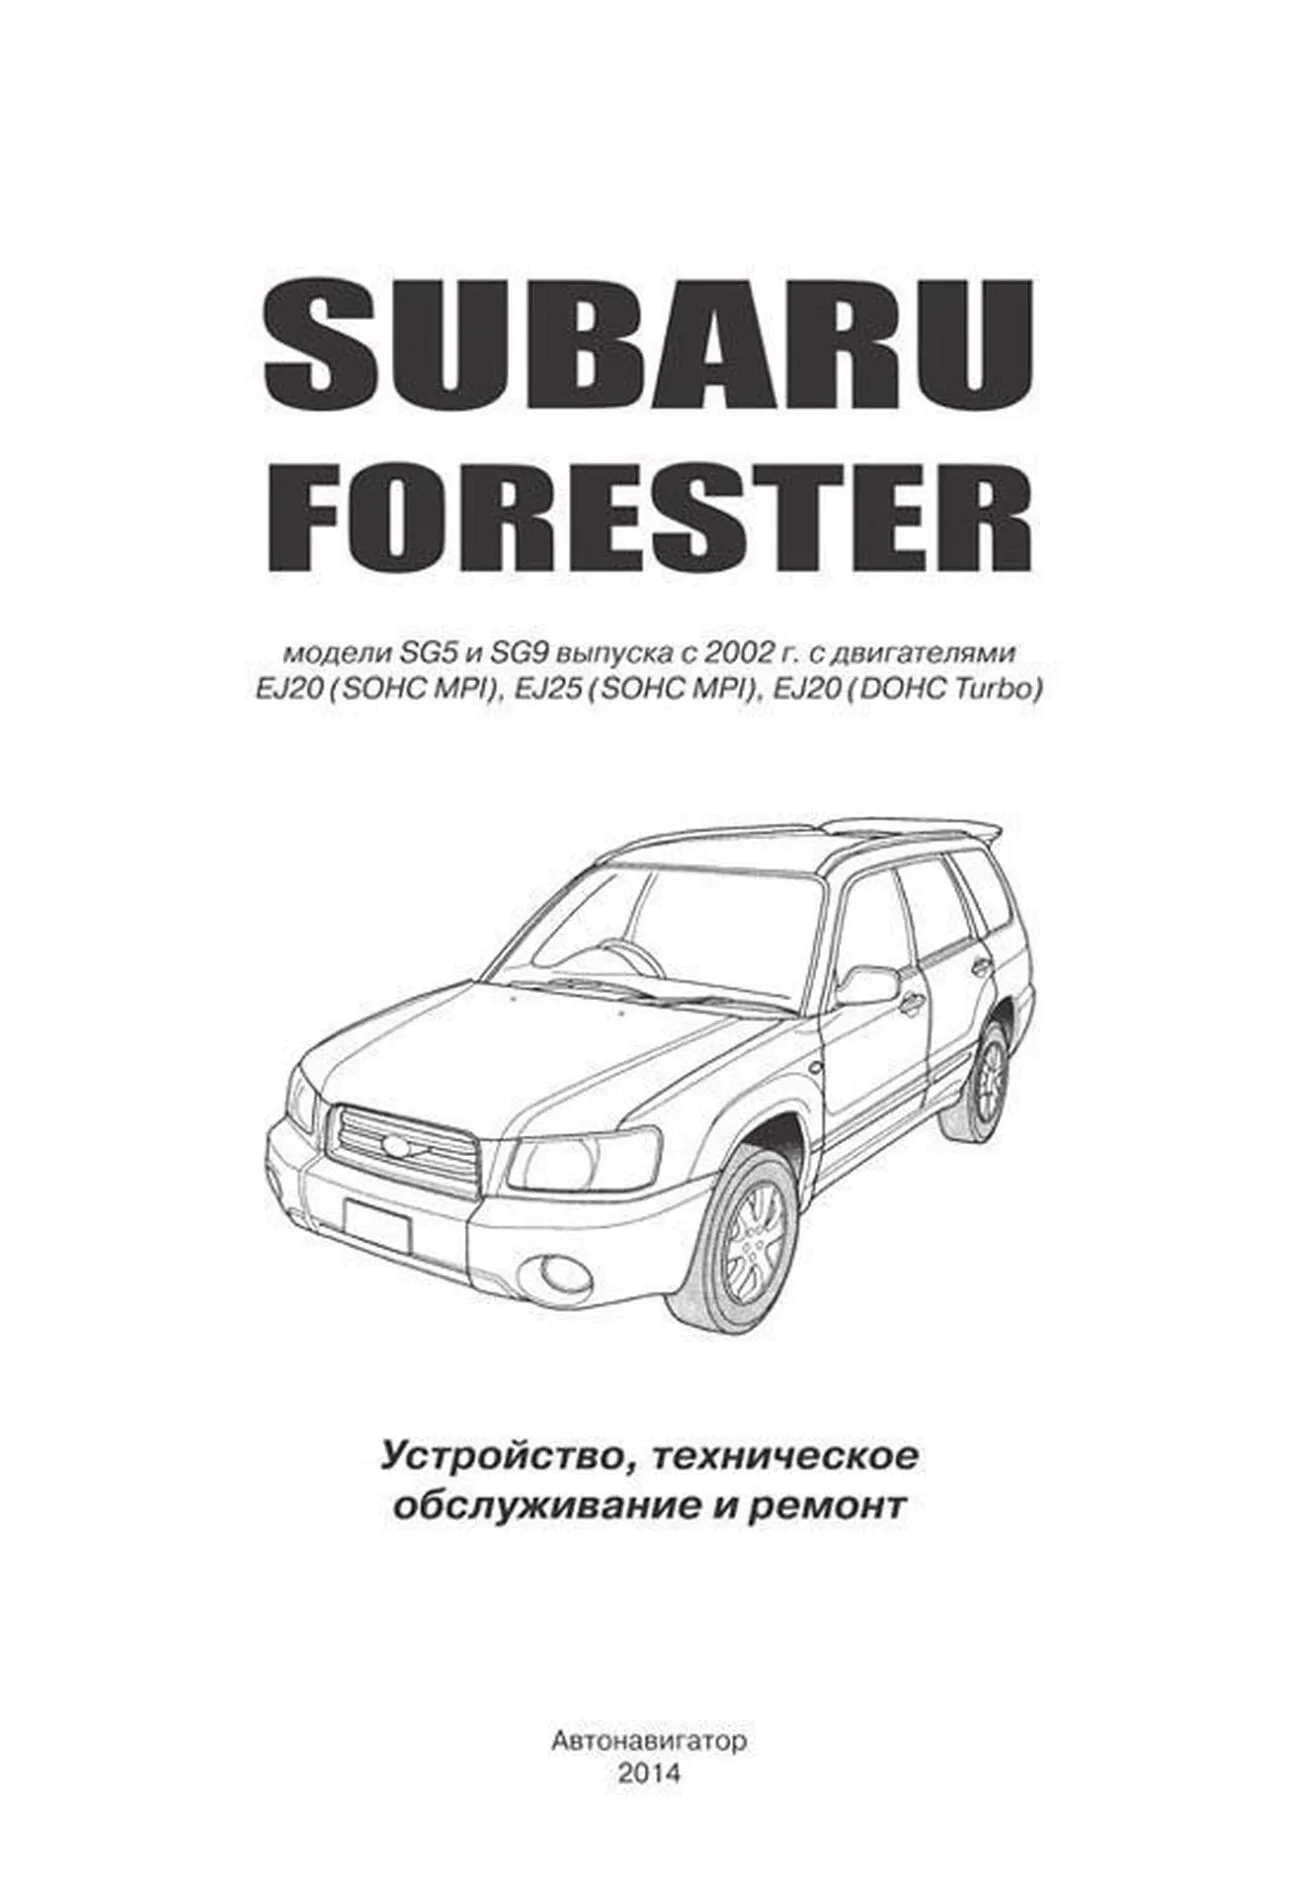 Книга: SUBARU FORESTER (б) 2002-2008 г.в., рем., экспл., то | Автонавигатор